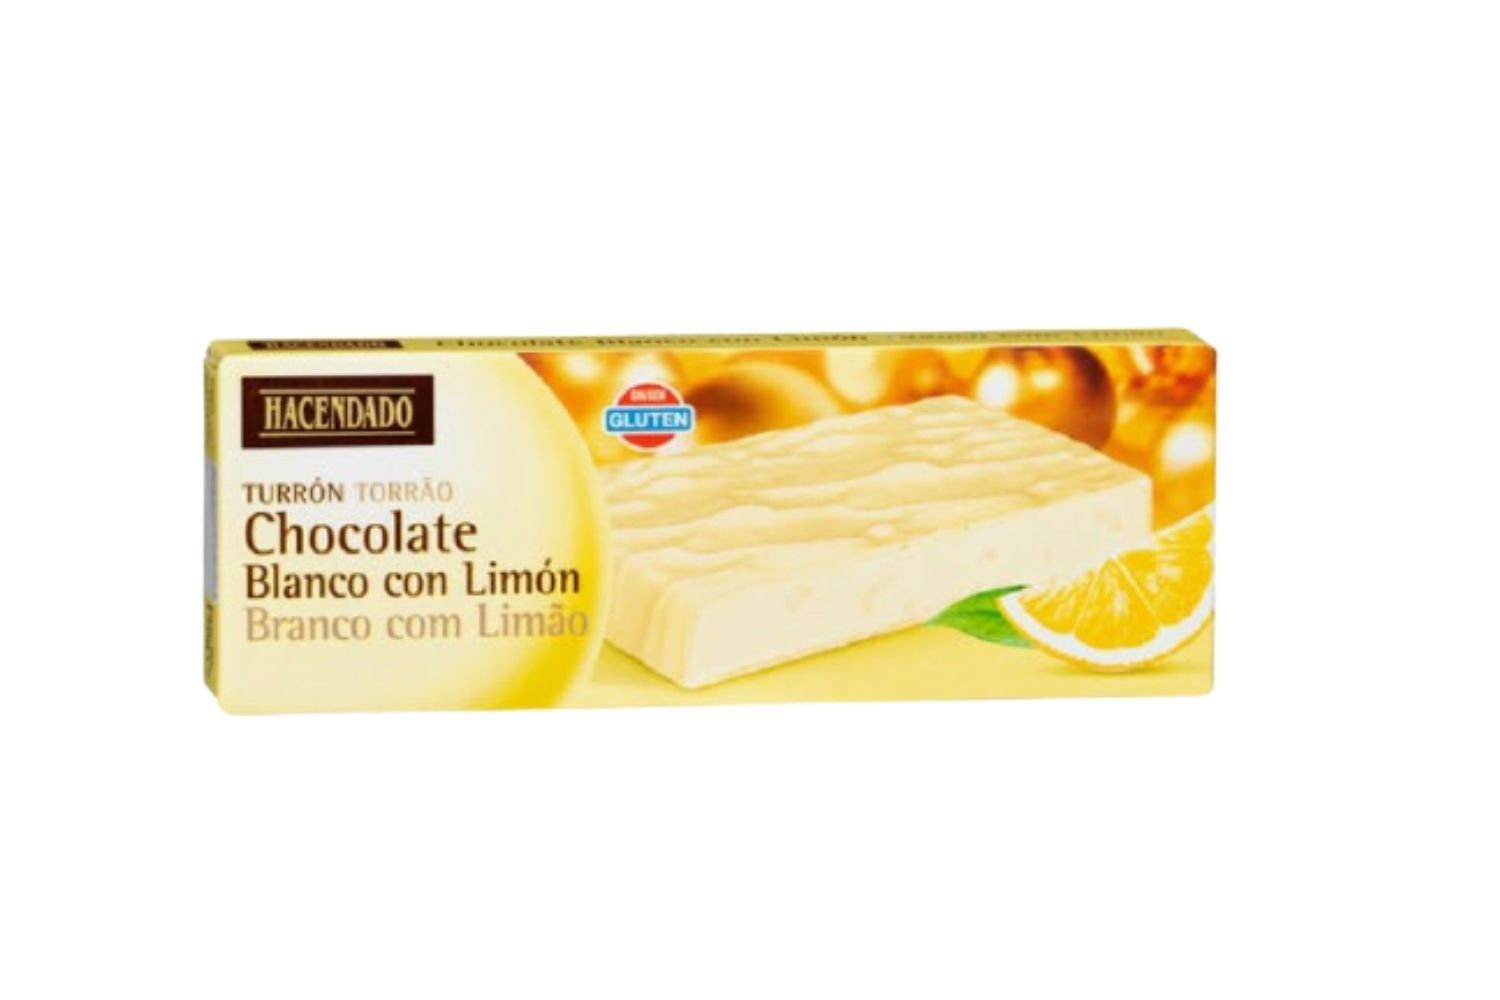 El turrón de chocolate blanco y limón de Mercadona / MERCADONA